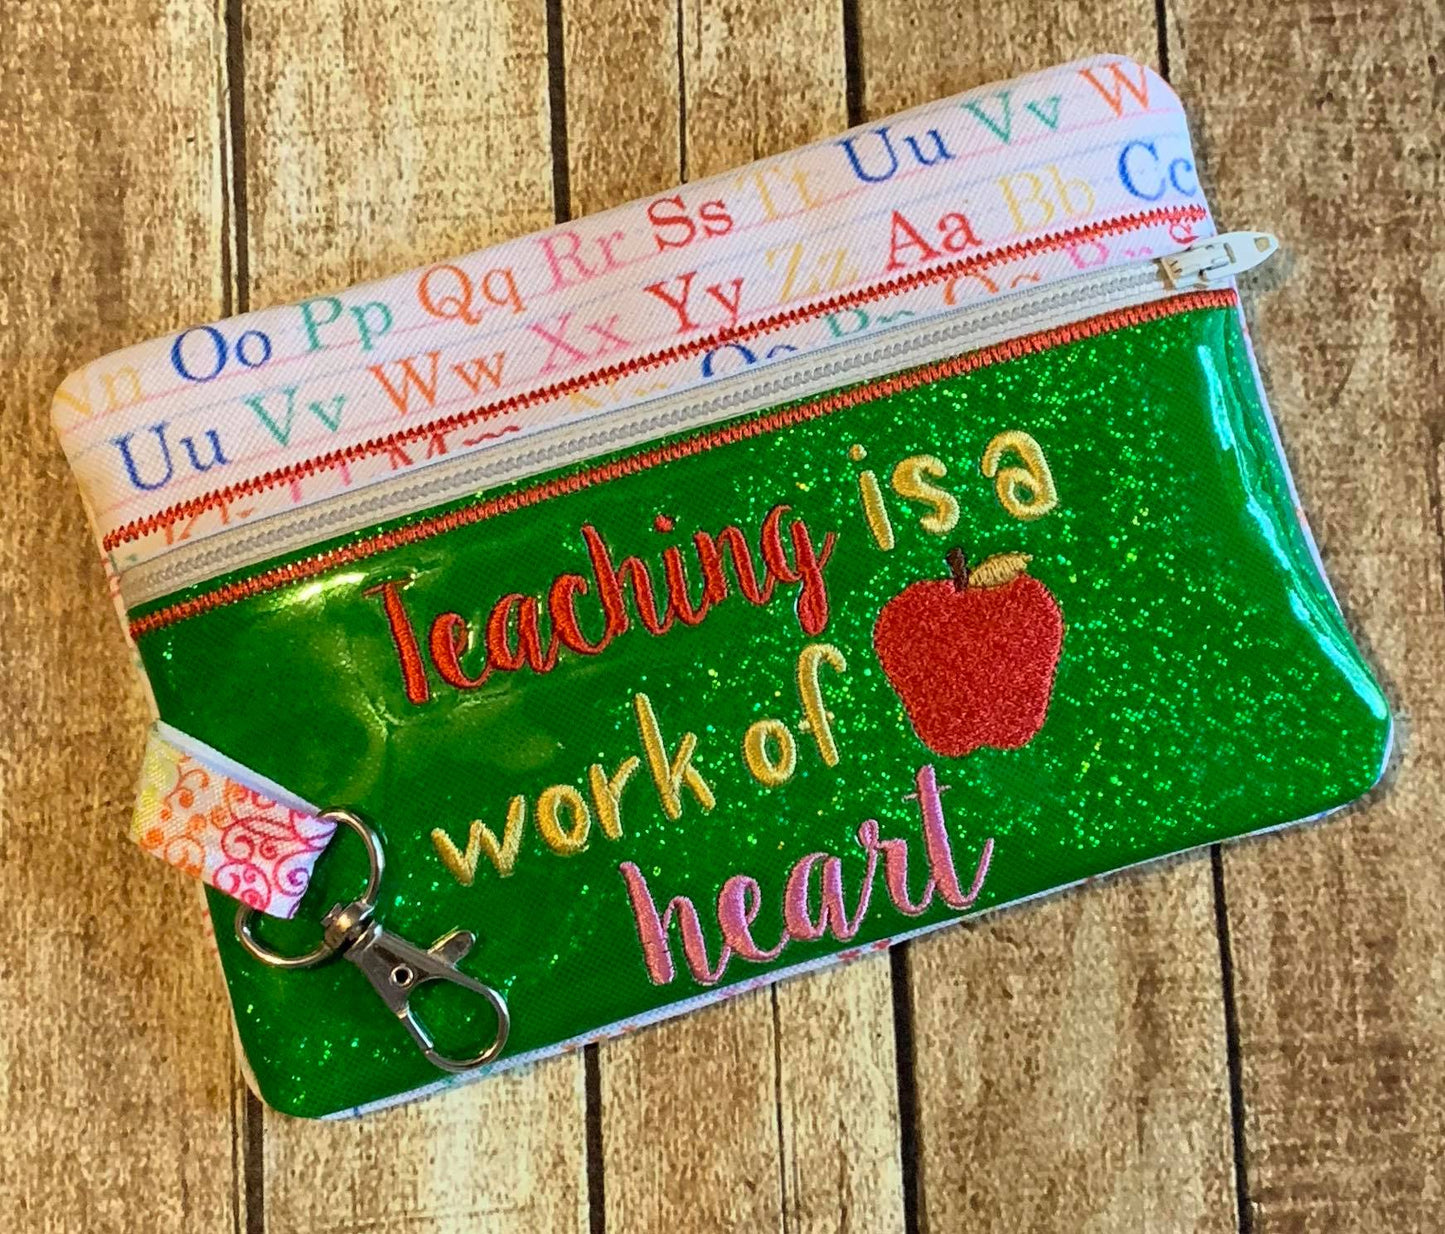 Teaching is a Work of Heart Zipper Bag 5x7 only